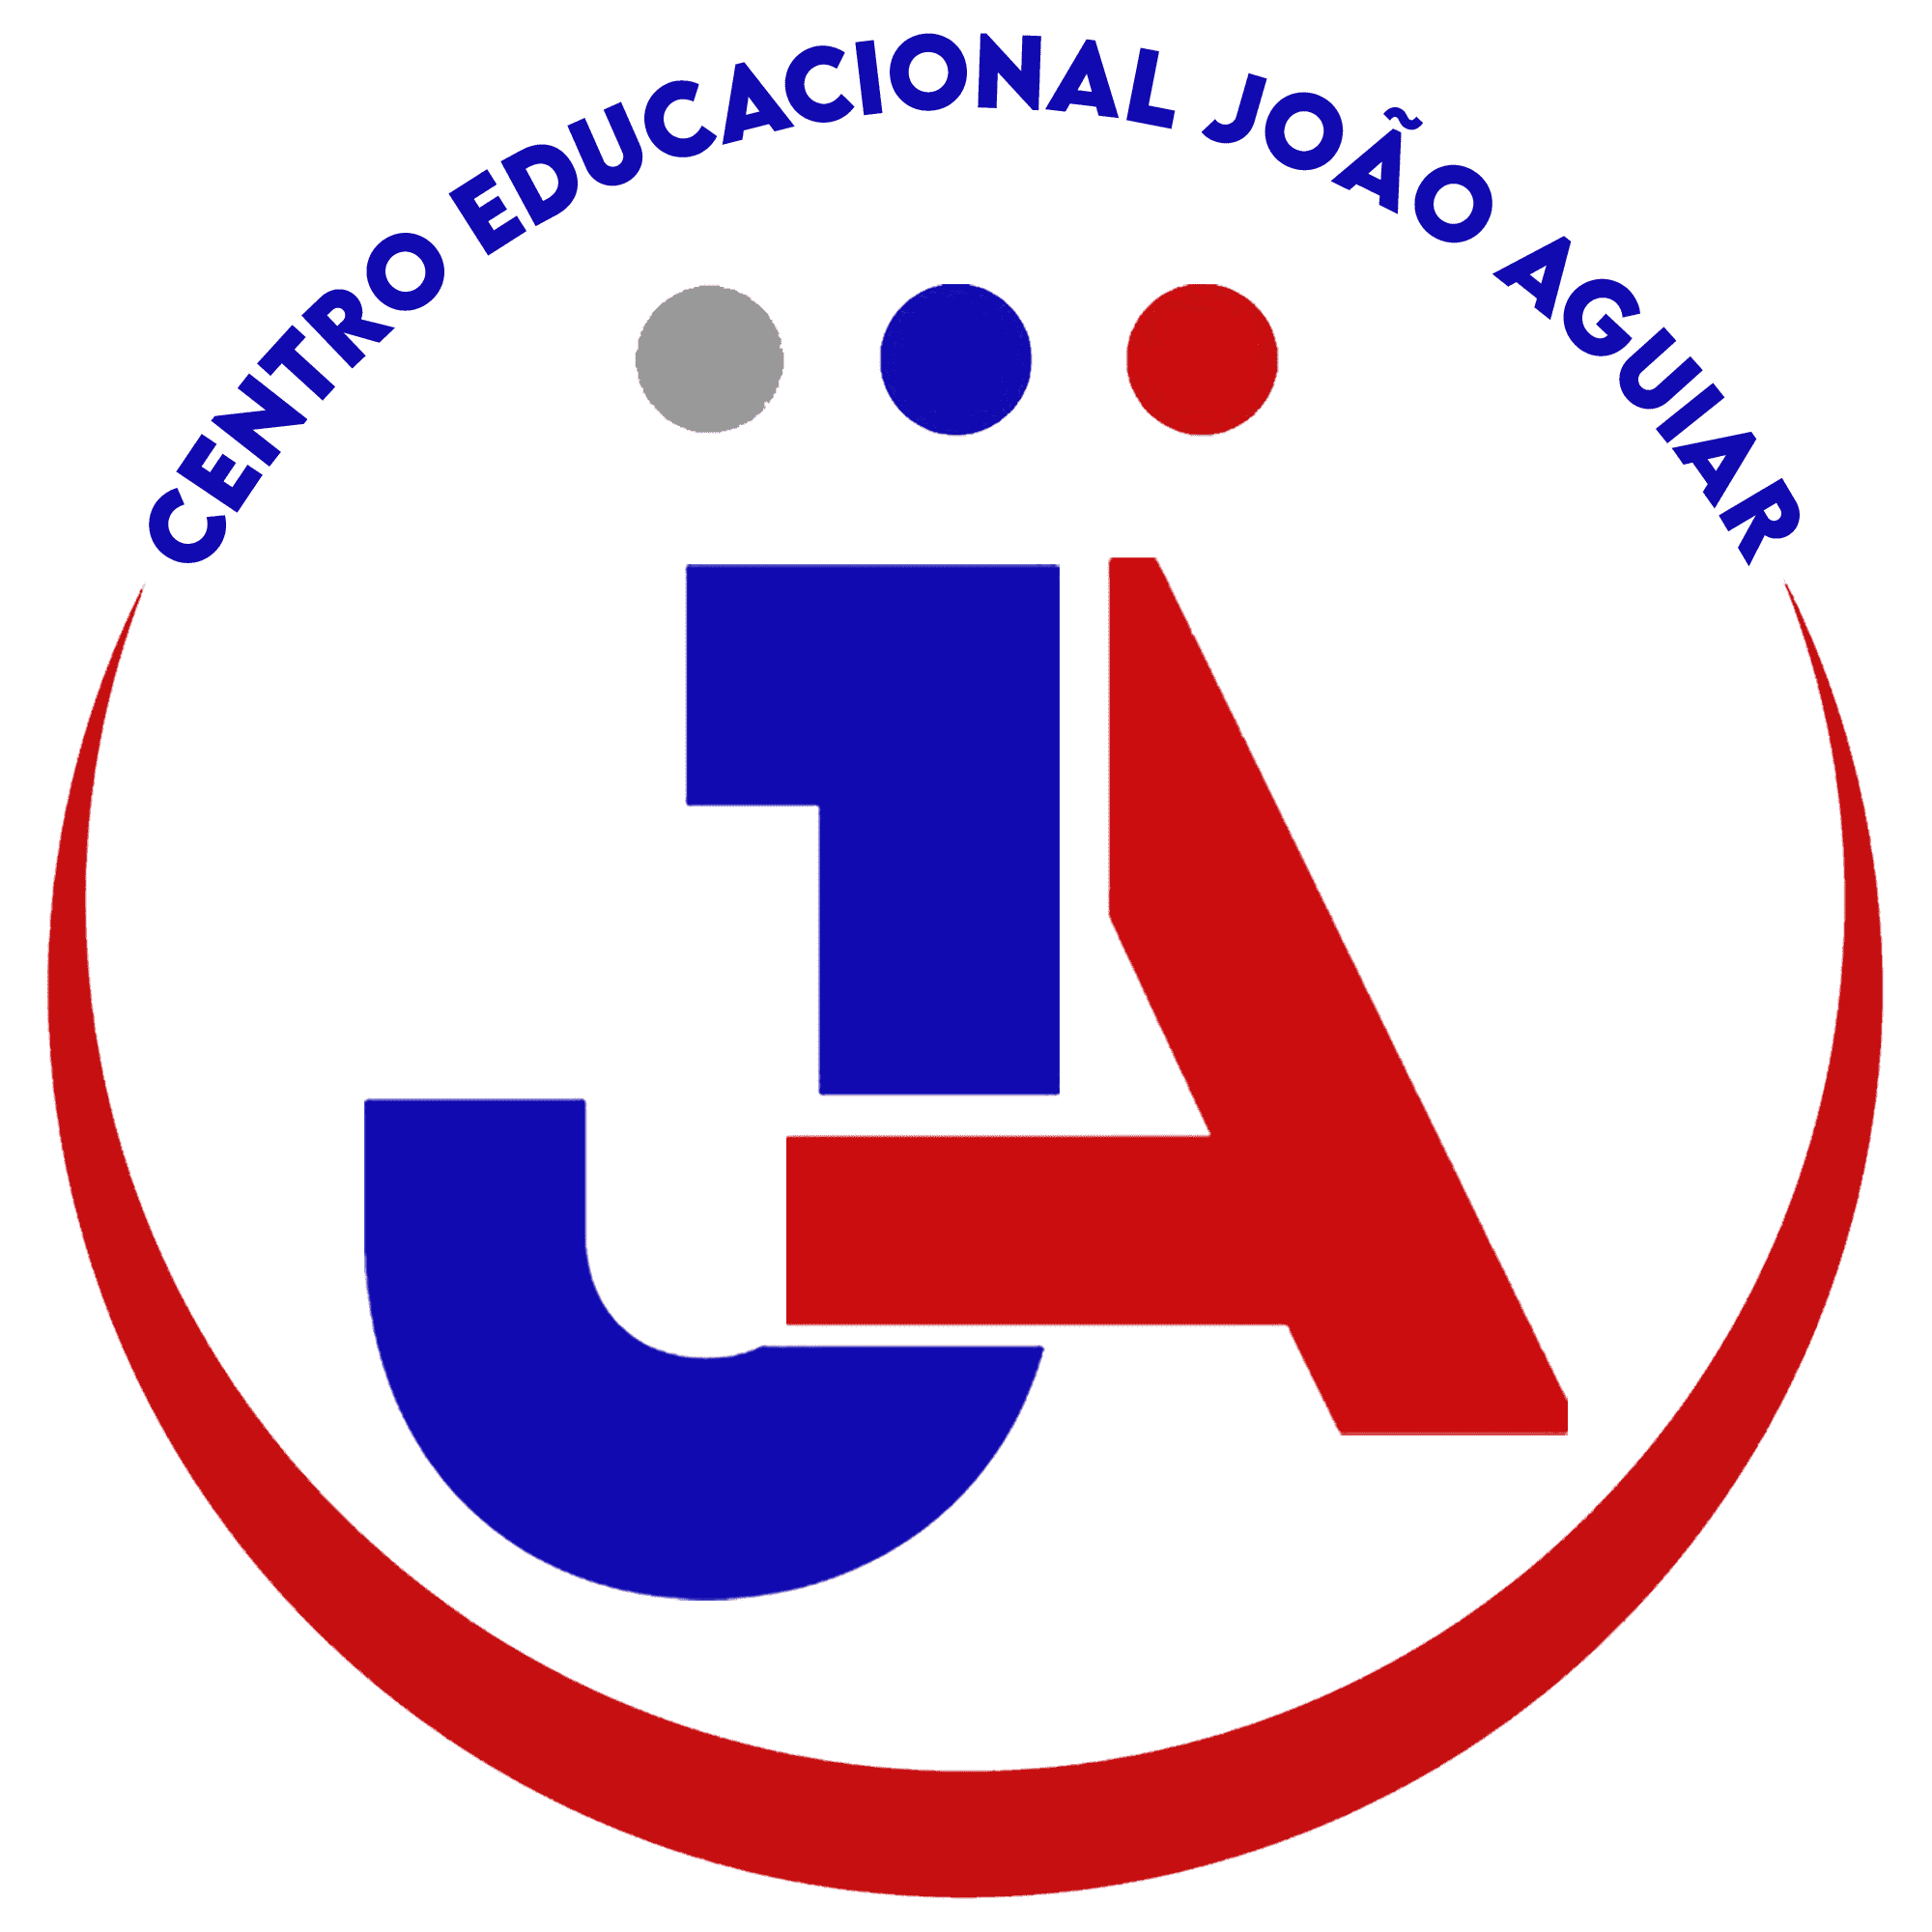  Centro Educacional João Aguiar 